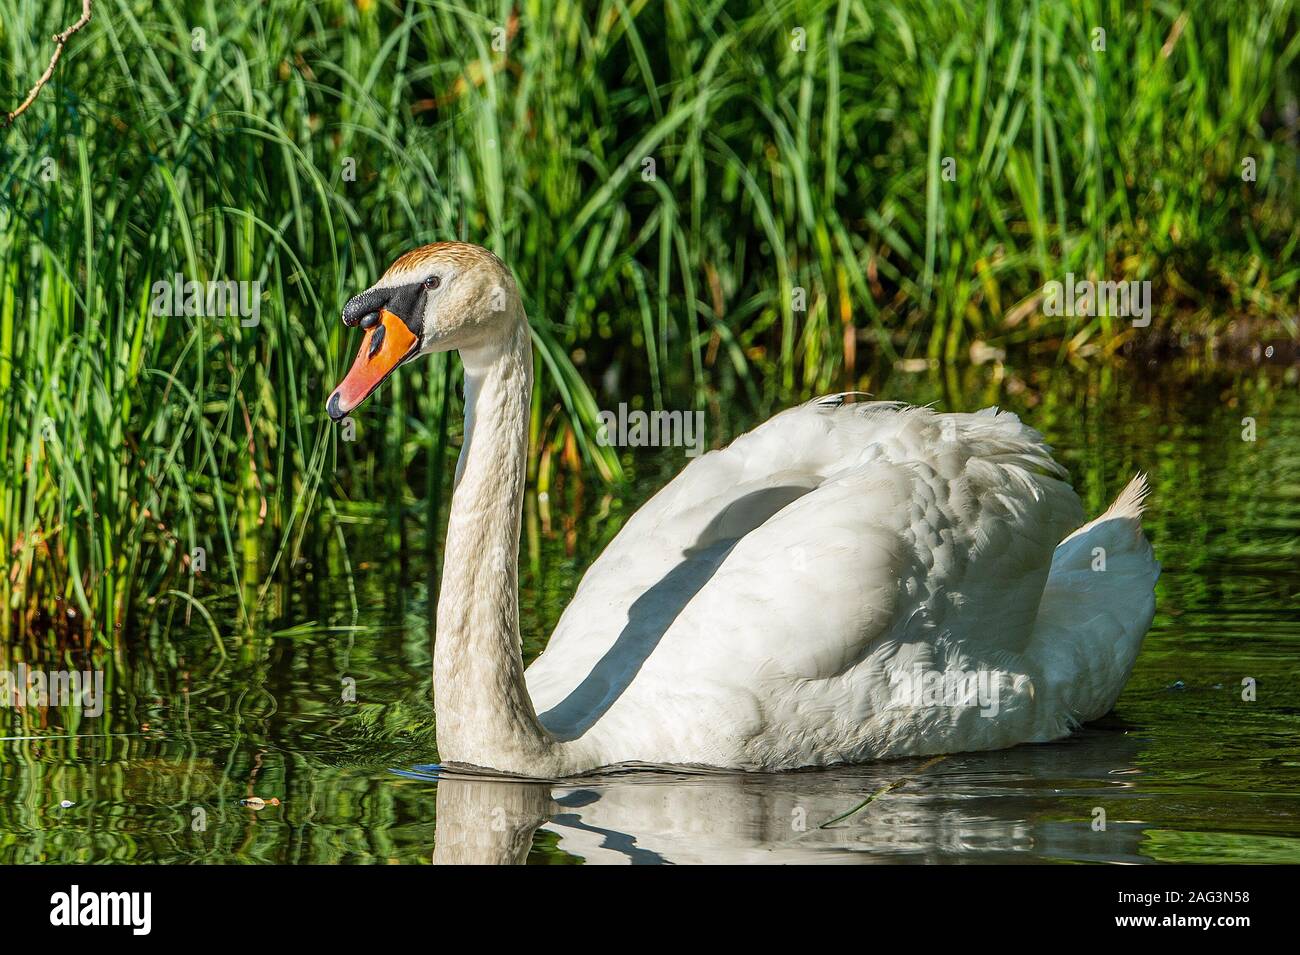 Piscina de cisne blanco en un estanque rodeado de hierba verde alta. Foto de stock